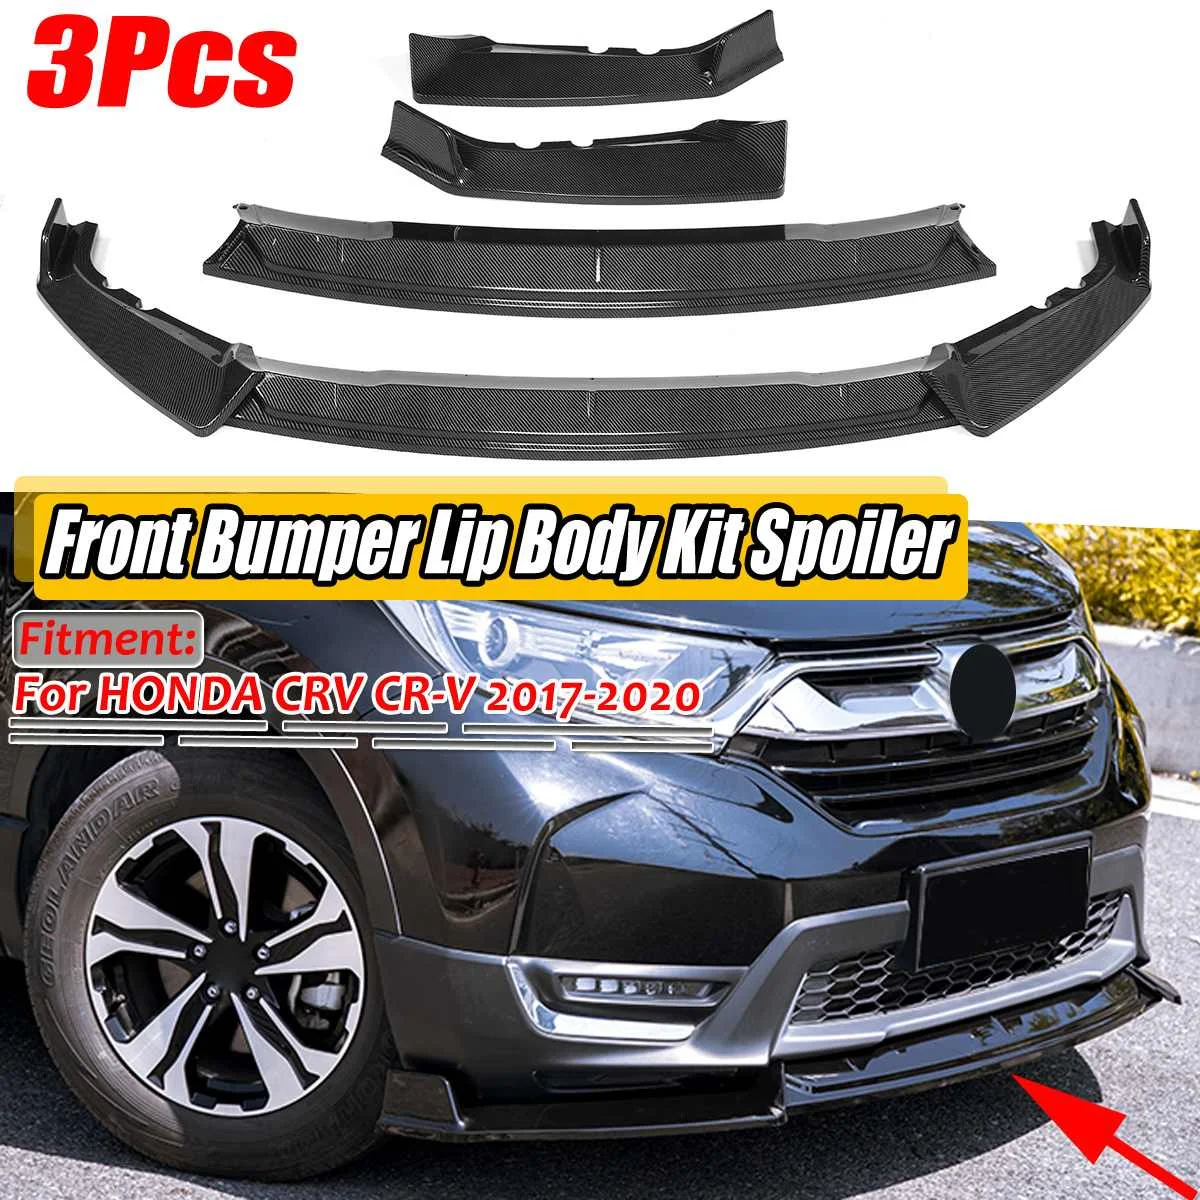 

3PCS Car Front Bumper Splitter Lip Spoiler Diffuser Protection Body Kit Cover Trim For Honda CRV For CR-V 2017 2018 2019 2020